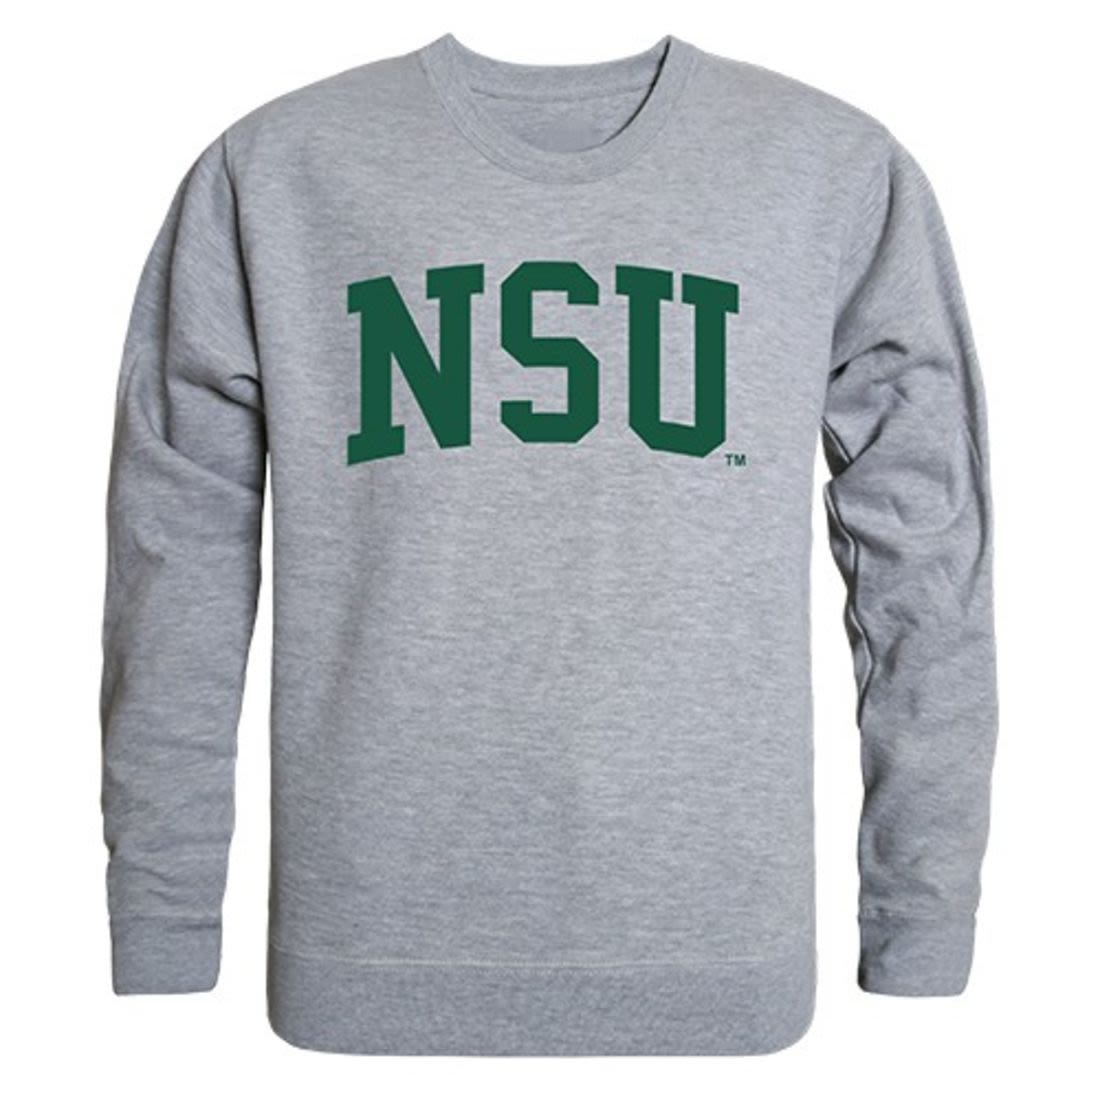 NSU Northeastern State University Game Day Crewneck Pullover Sweatshirt Sweater Heather Grey-Campus-Wardrobe